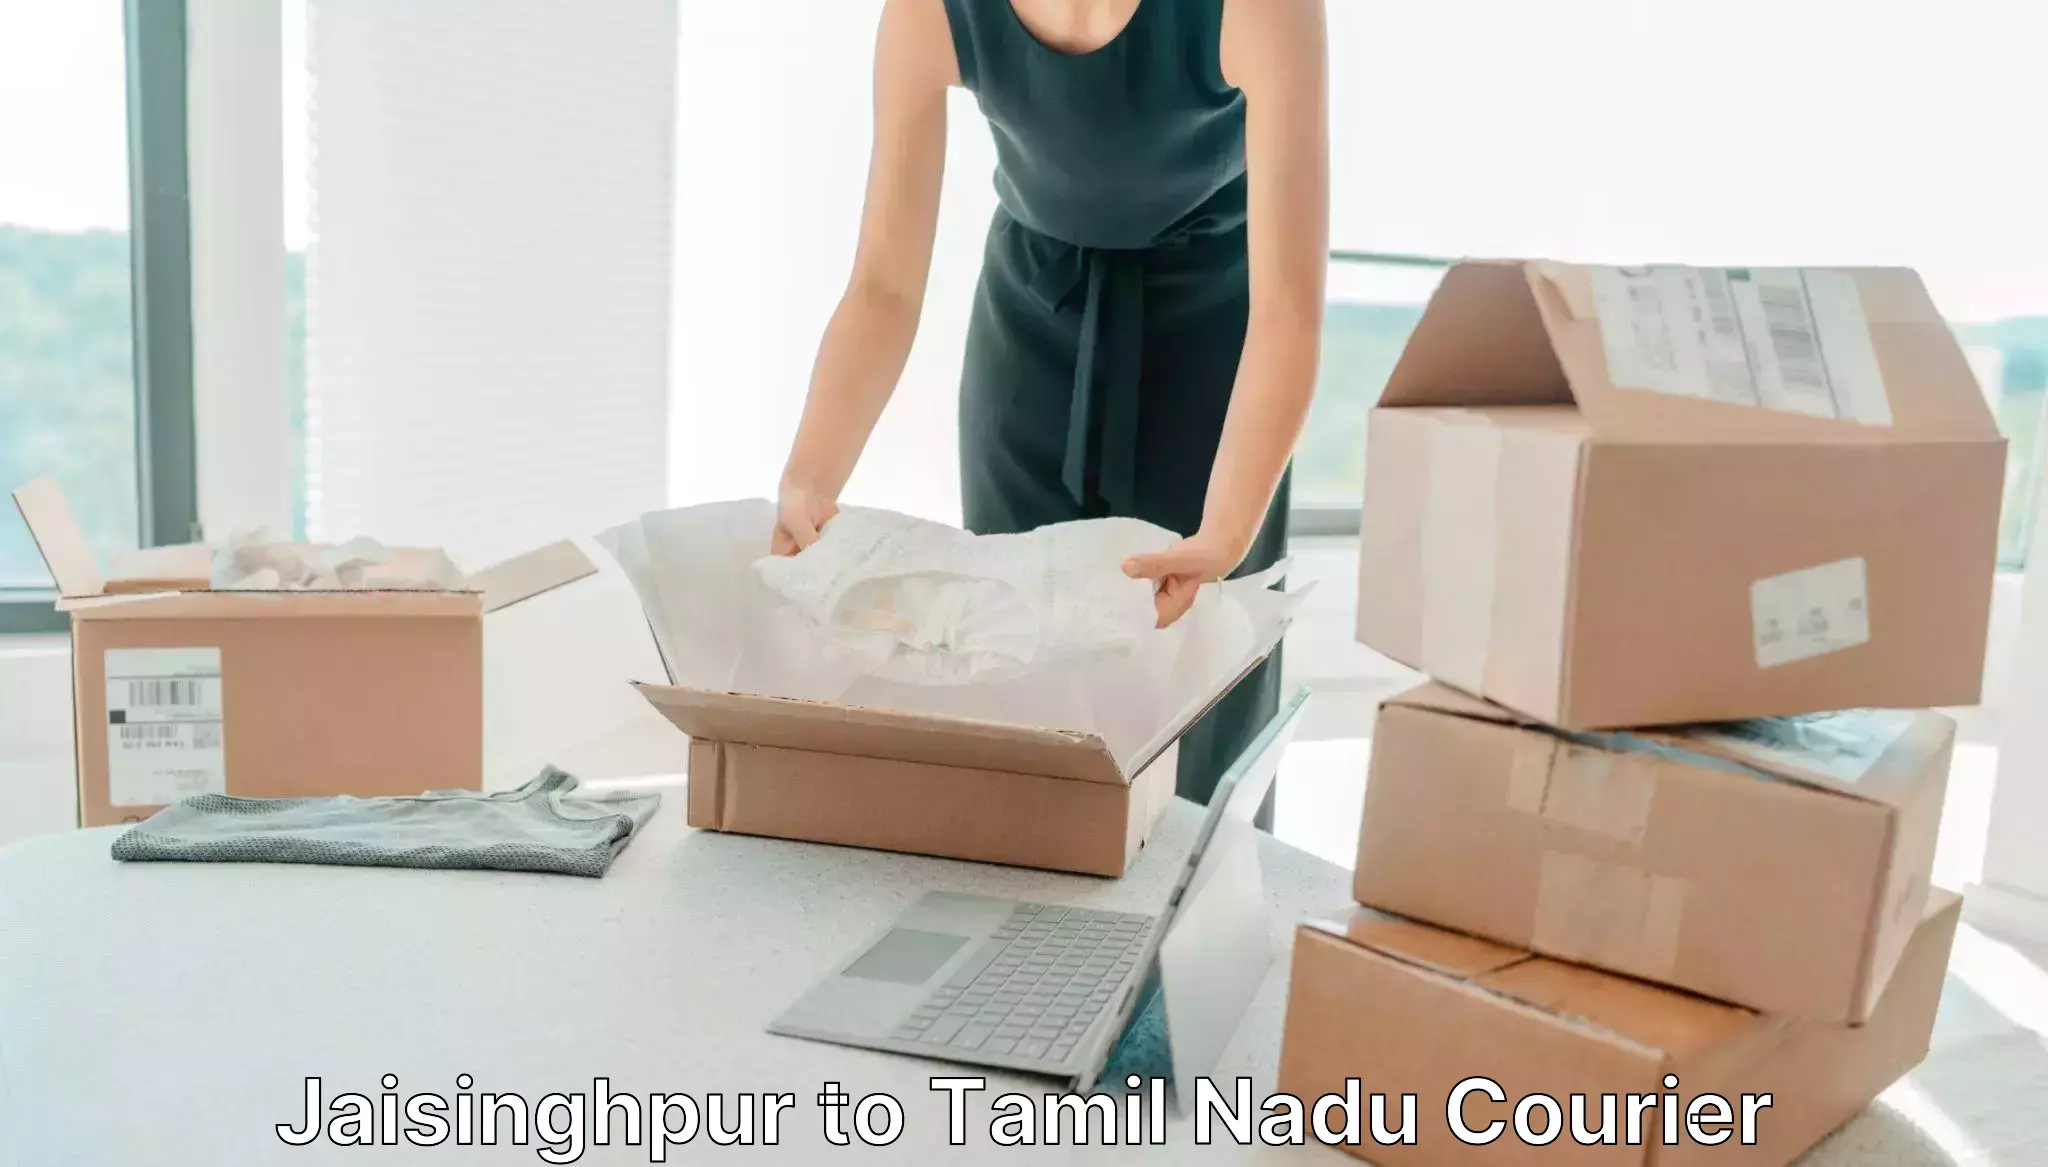 Flexible parcel services Jaisinghpur to Tamil Nadu